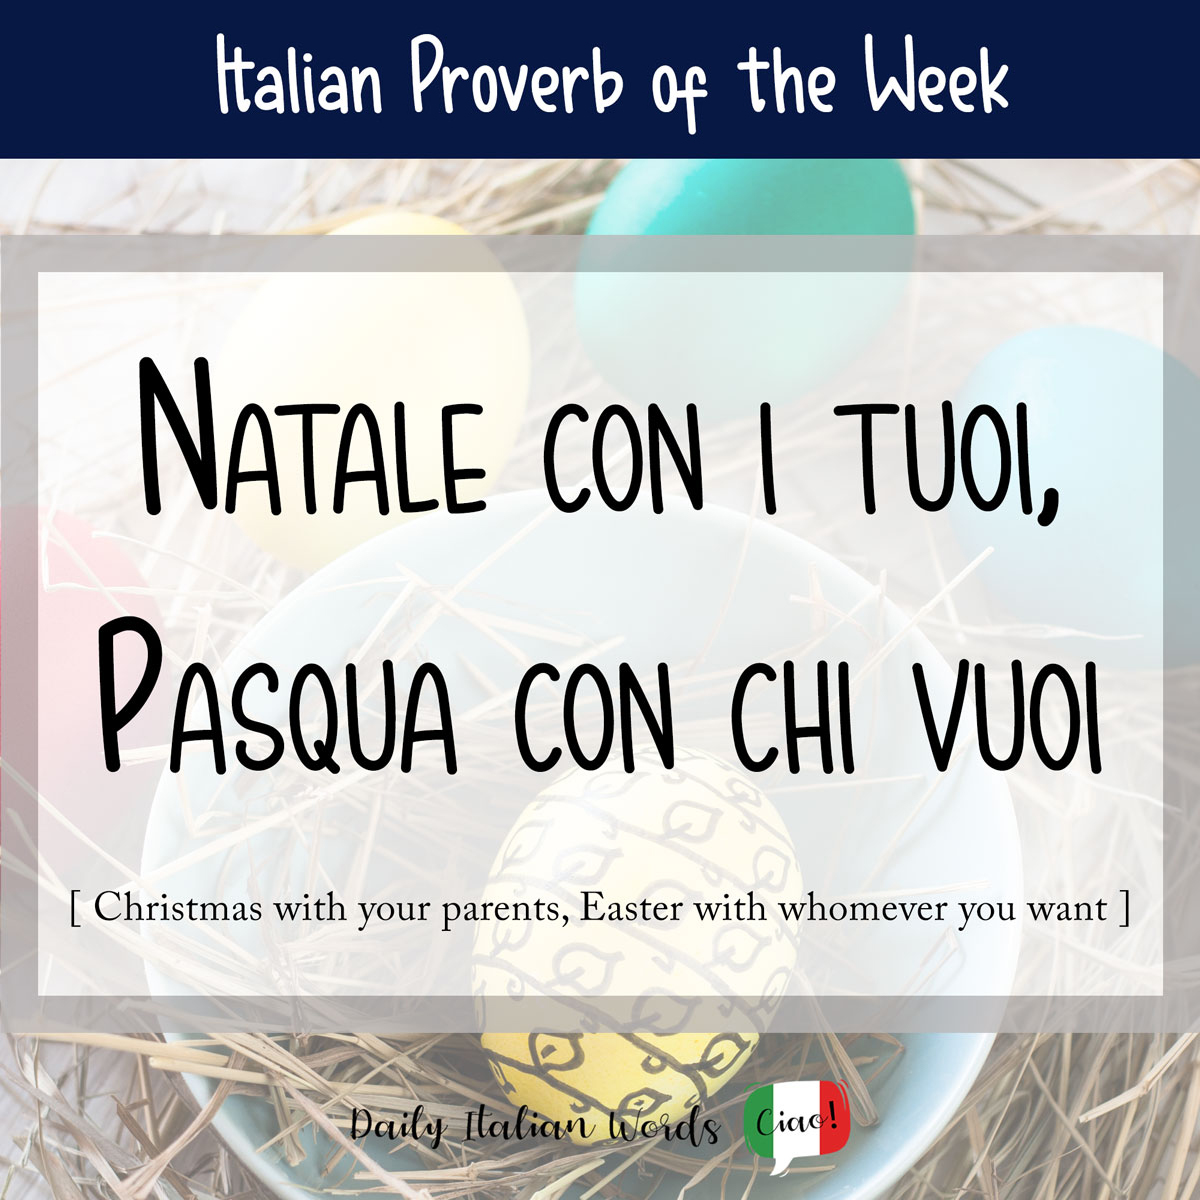 Italian proverb "Natale con i tuoi, pasqua con chi vuoi"